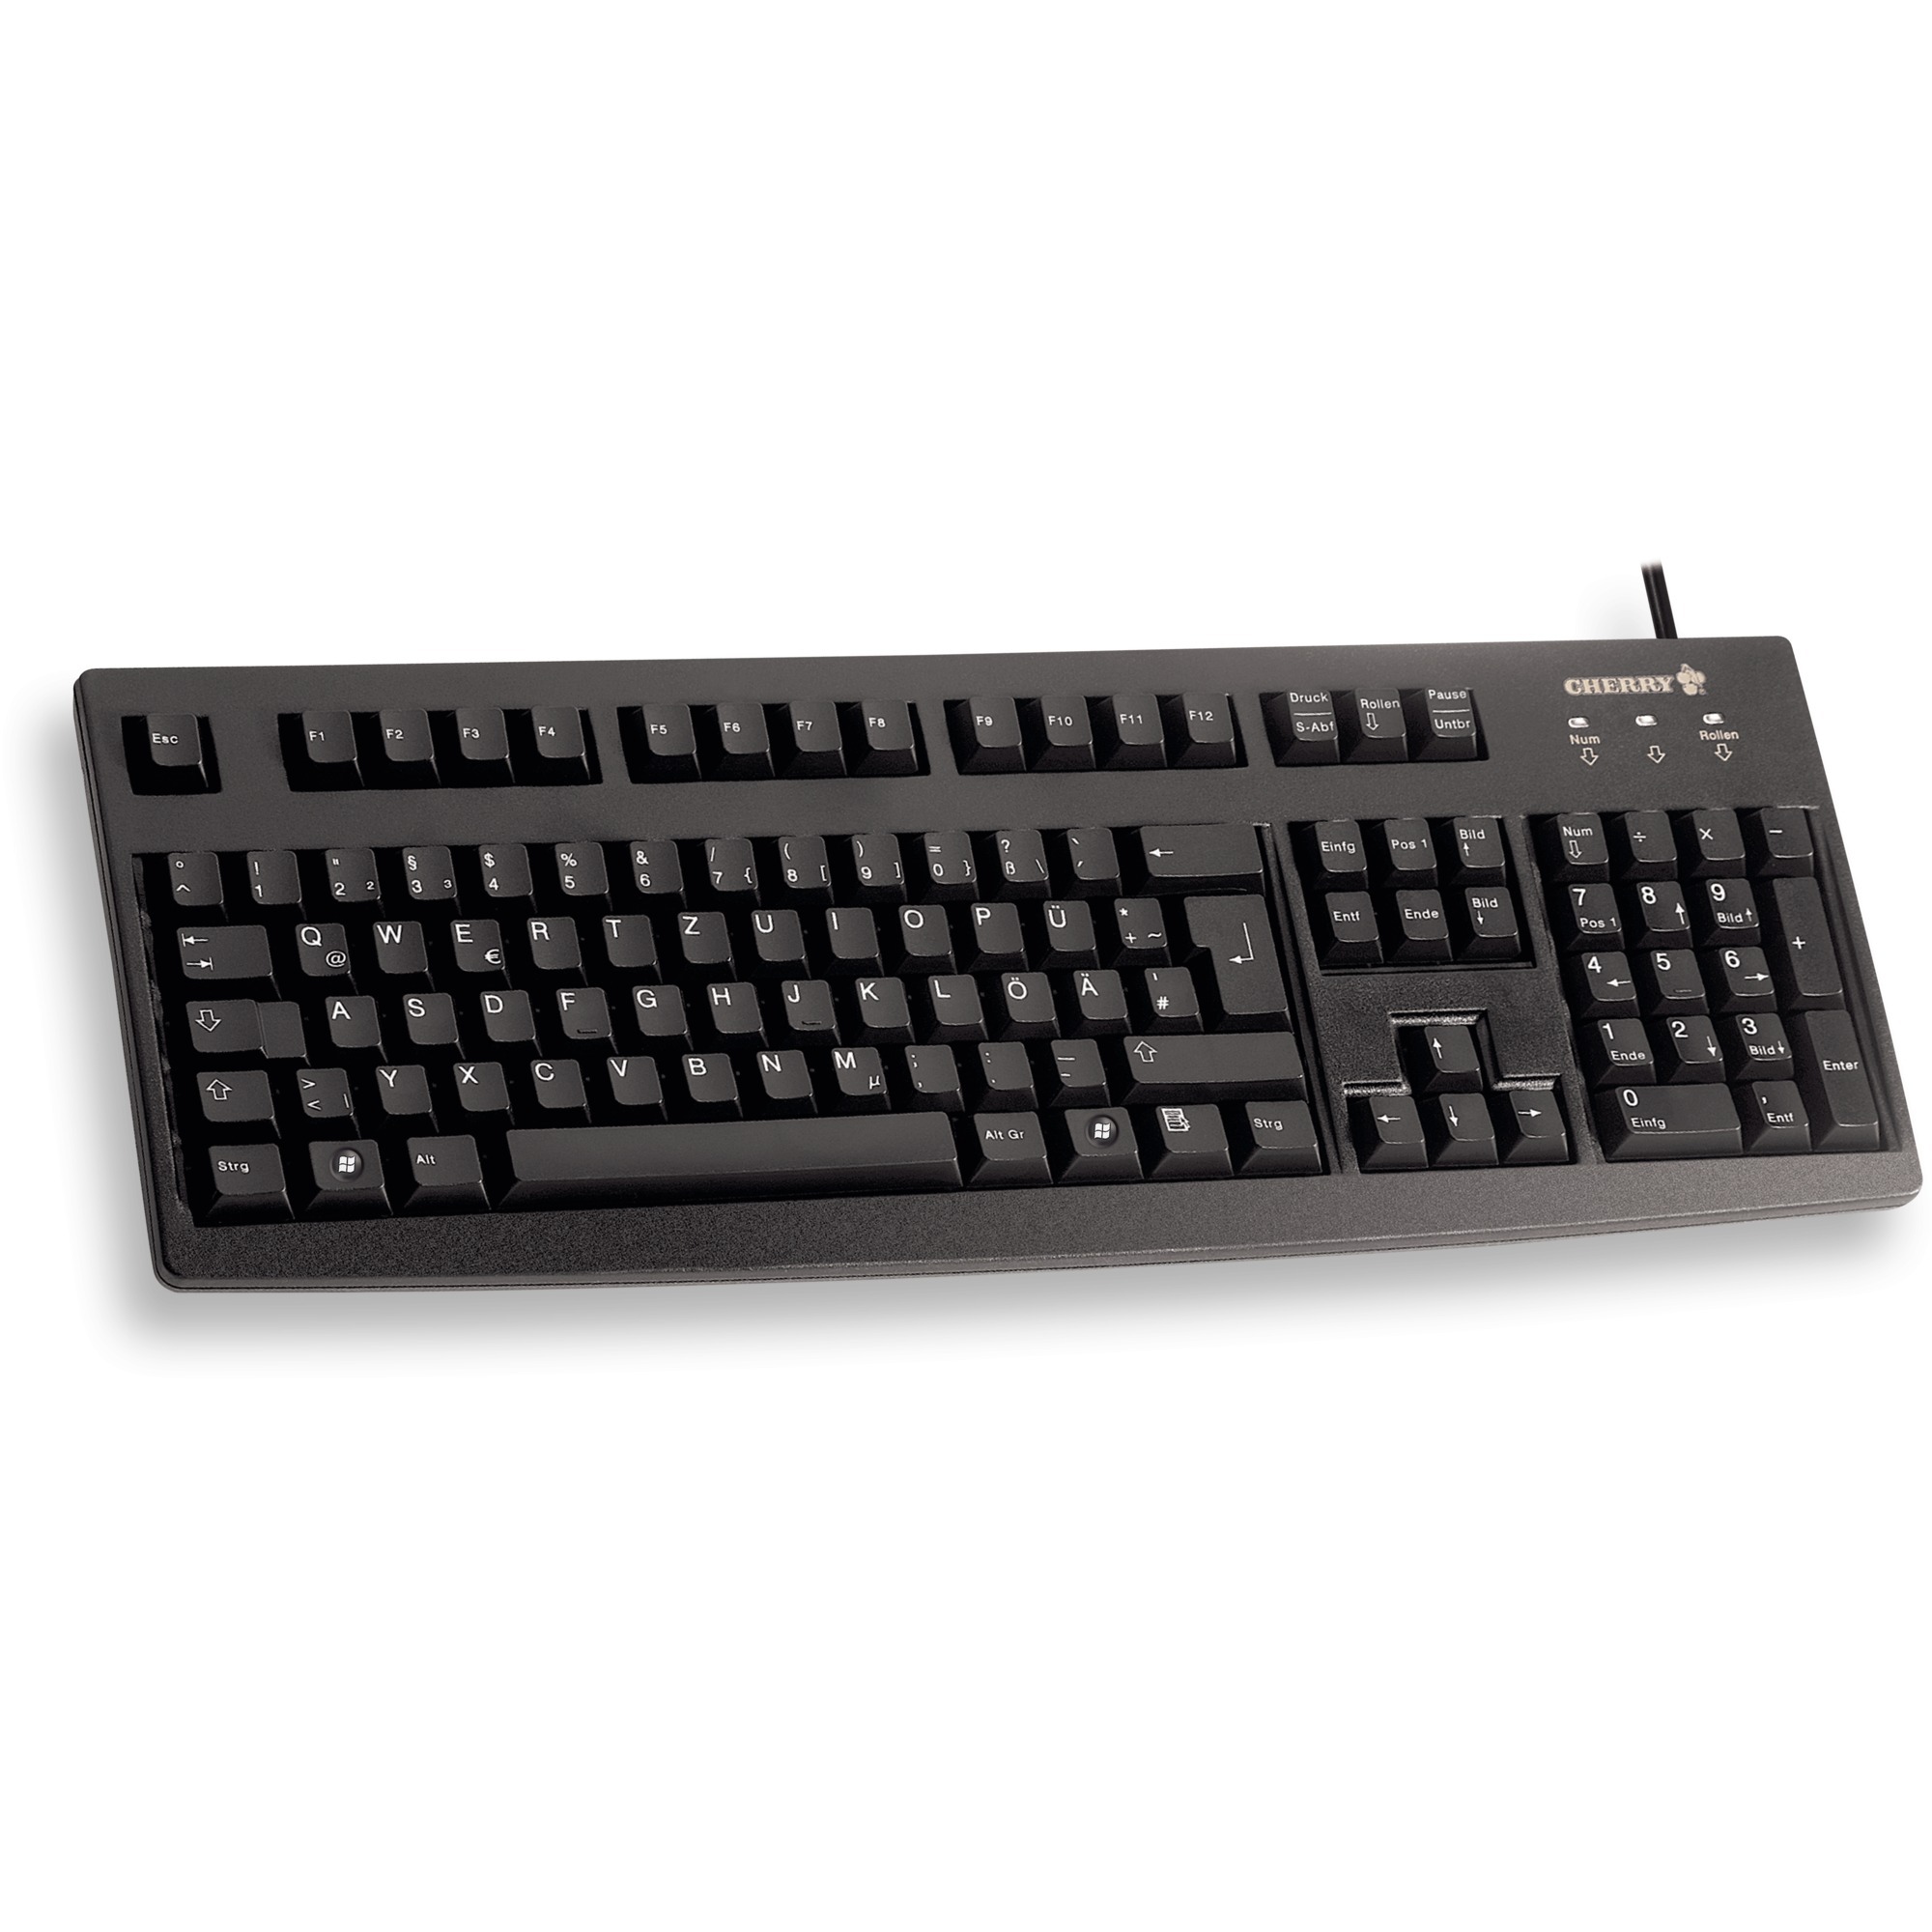 Image of Alternate - Business Line G83-6104, Tastatur online einkaufen bei Alternate